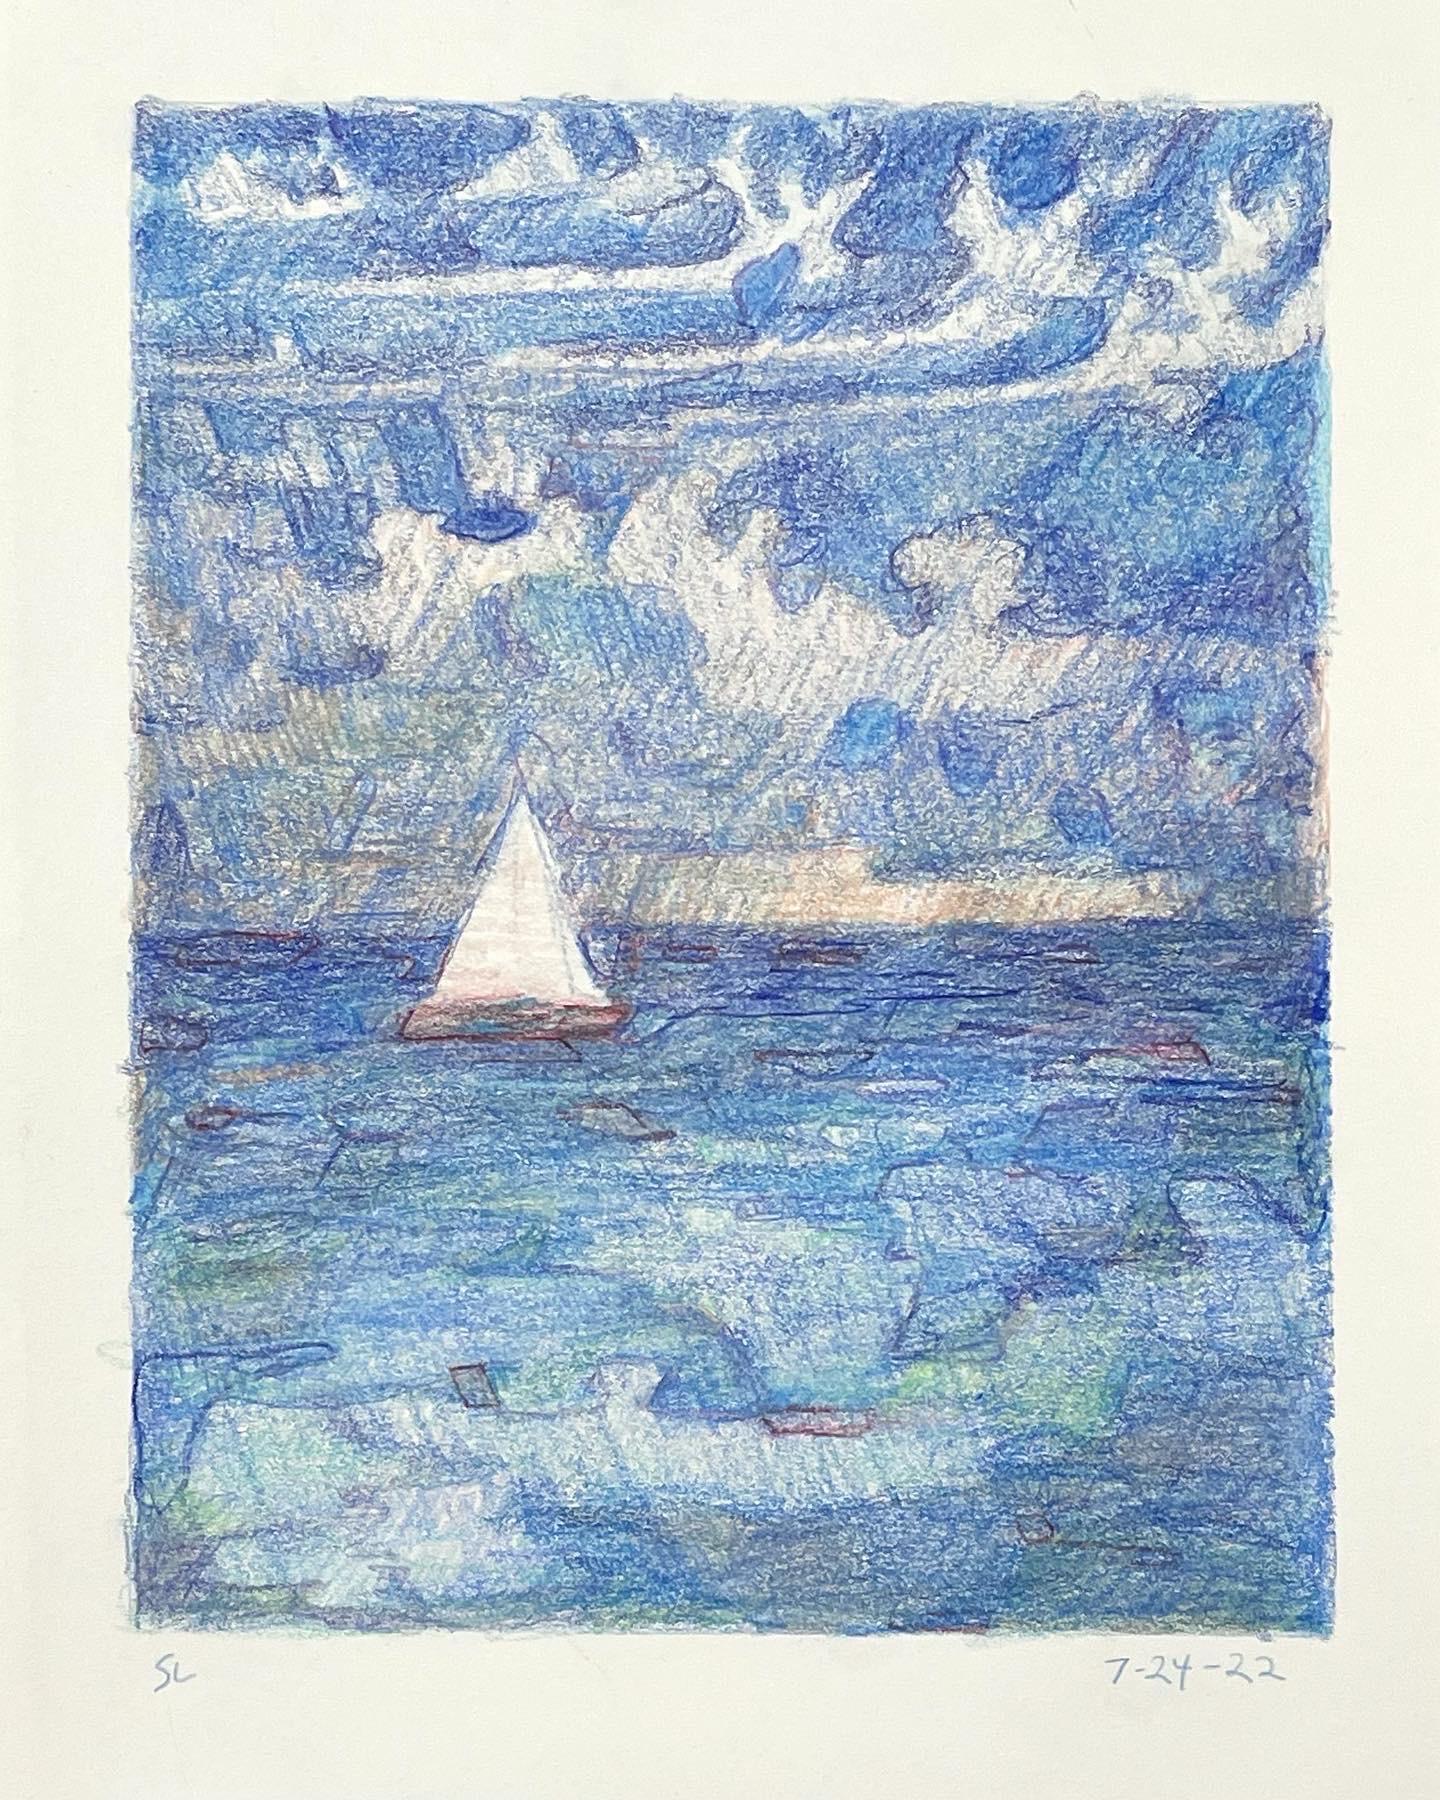 7-24-22, dessin de paysage abstrait impressionniste au crayon en couleur